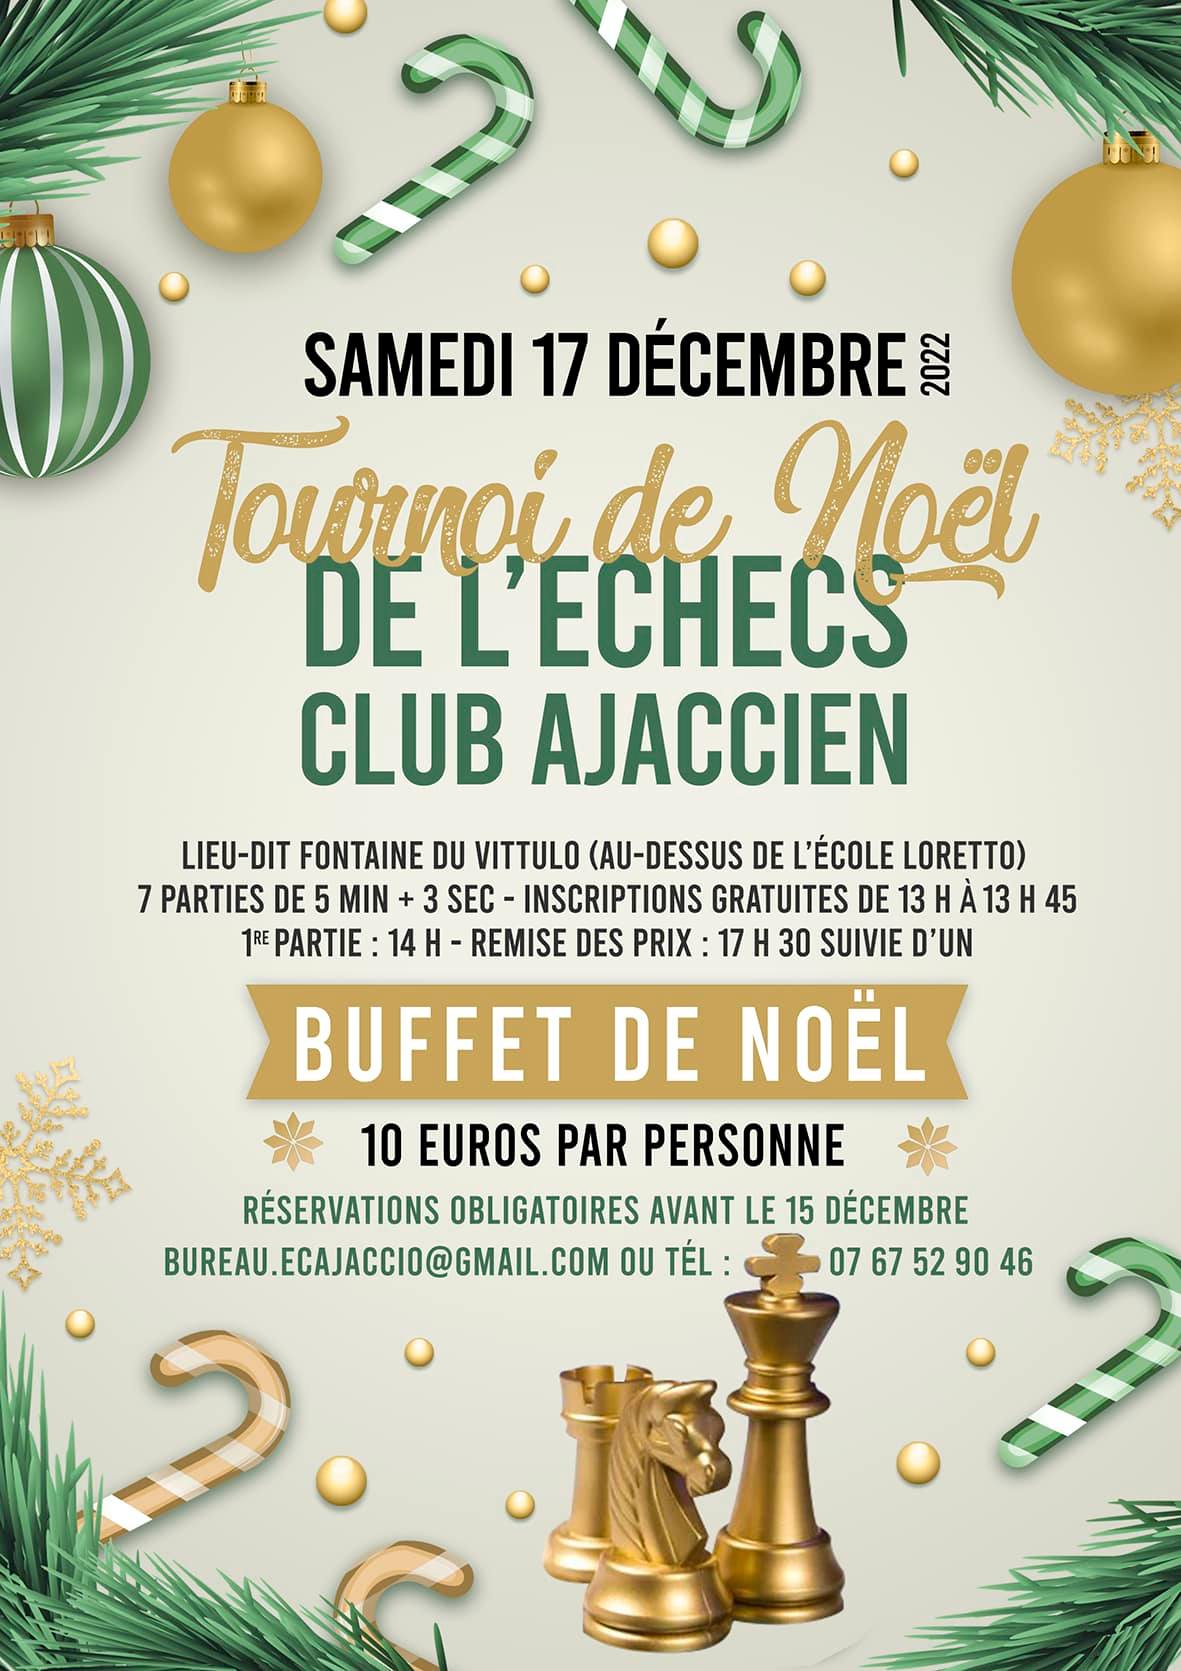 Tournoi de Noël de L'Echecs Club Ajaccien